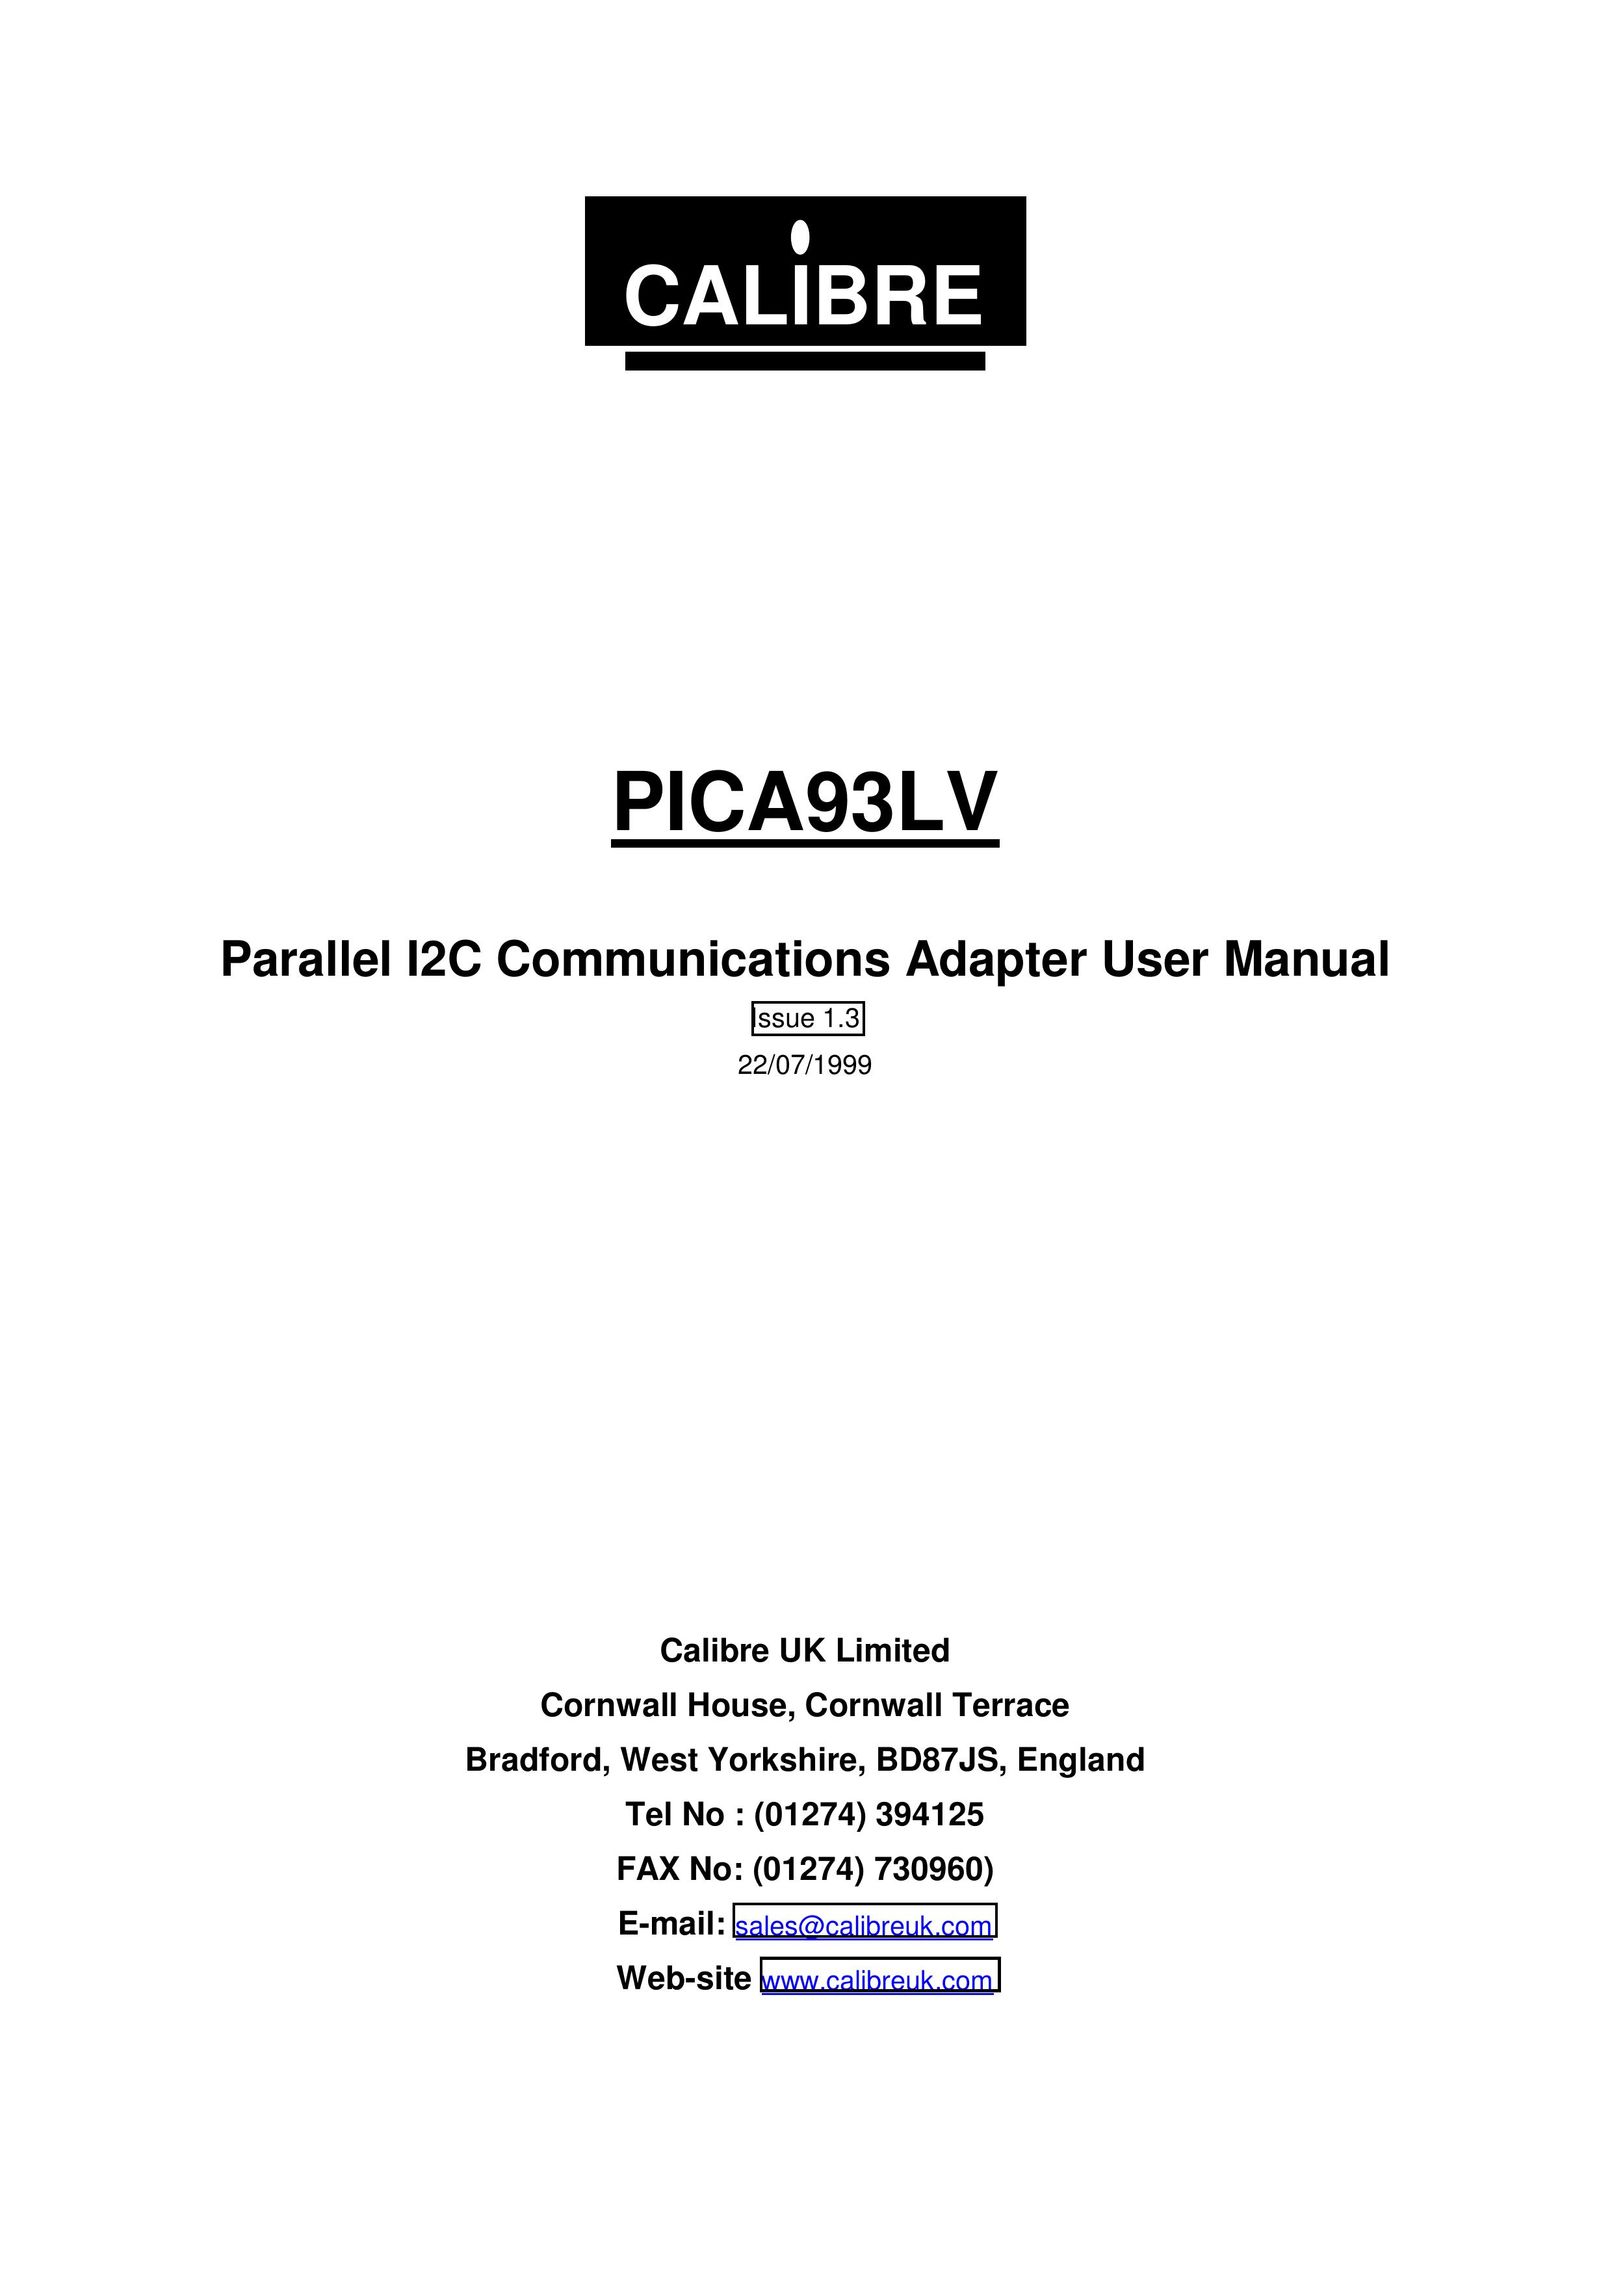 Calibre UK PICA93LV Network Card User Manual